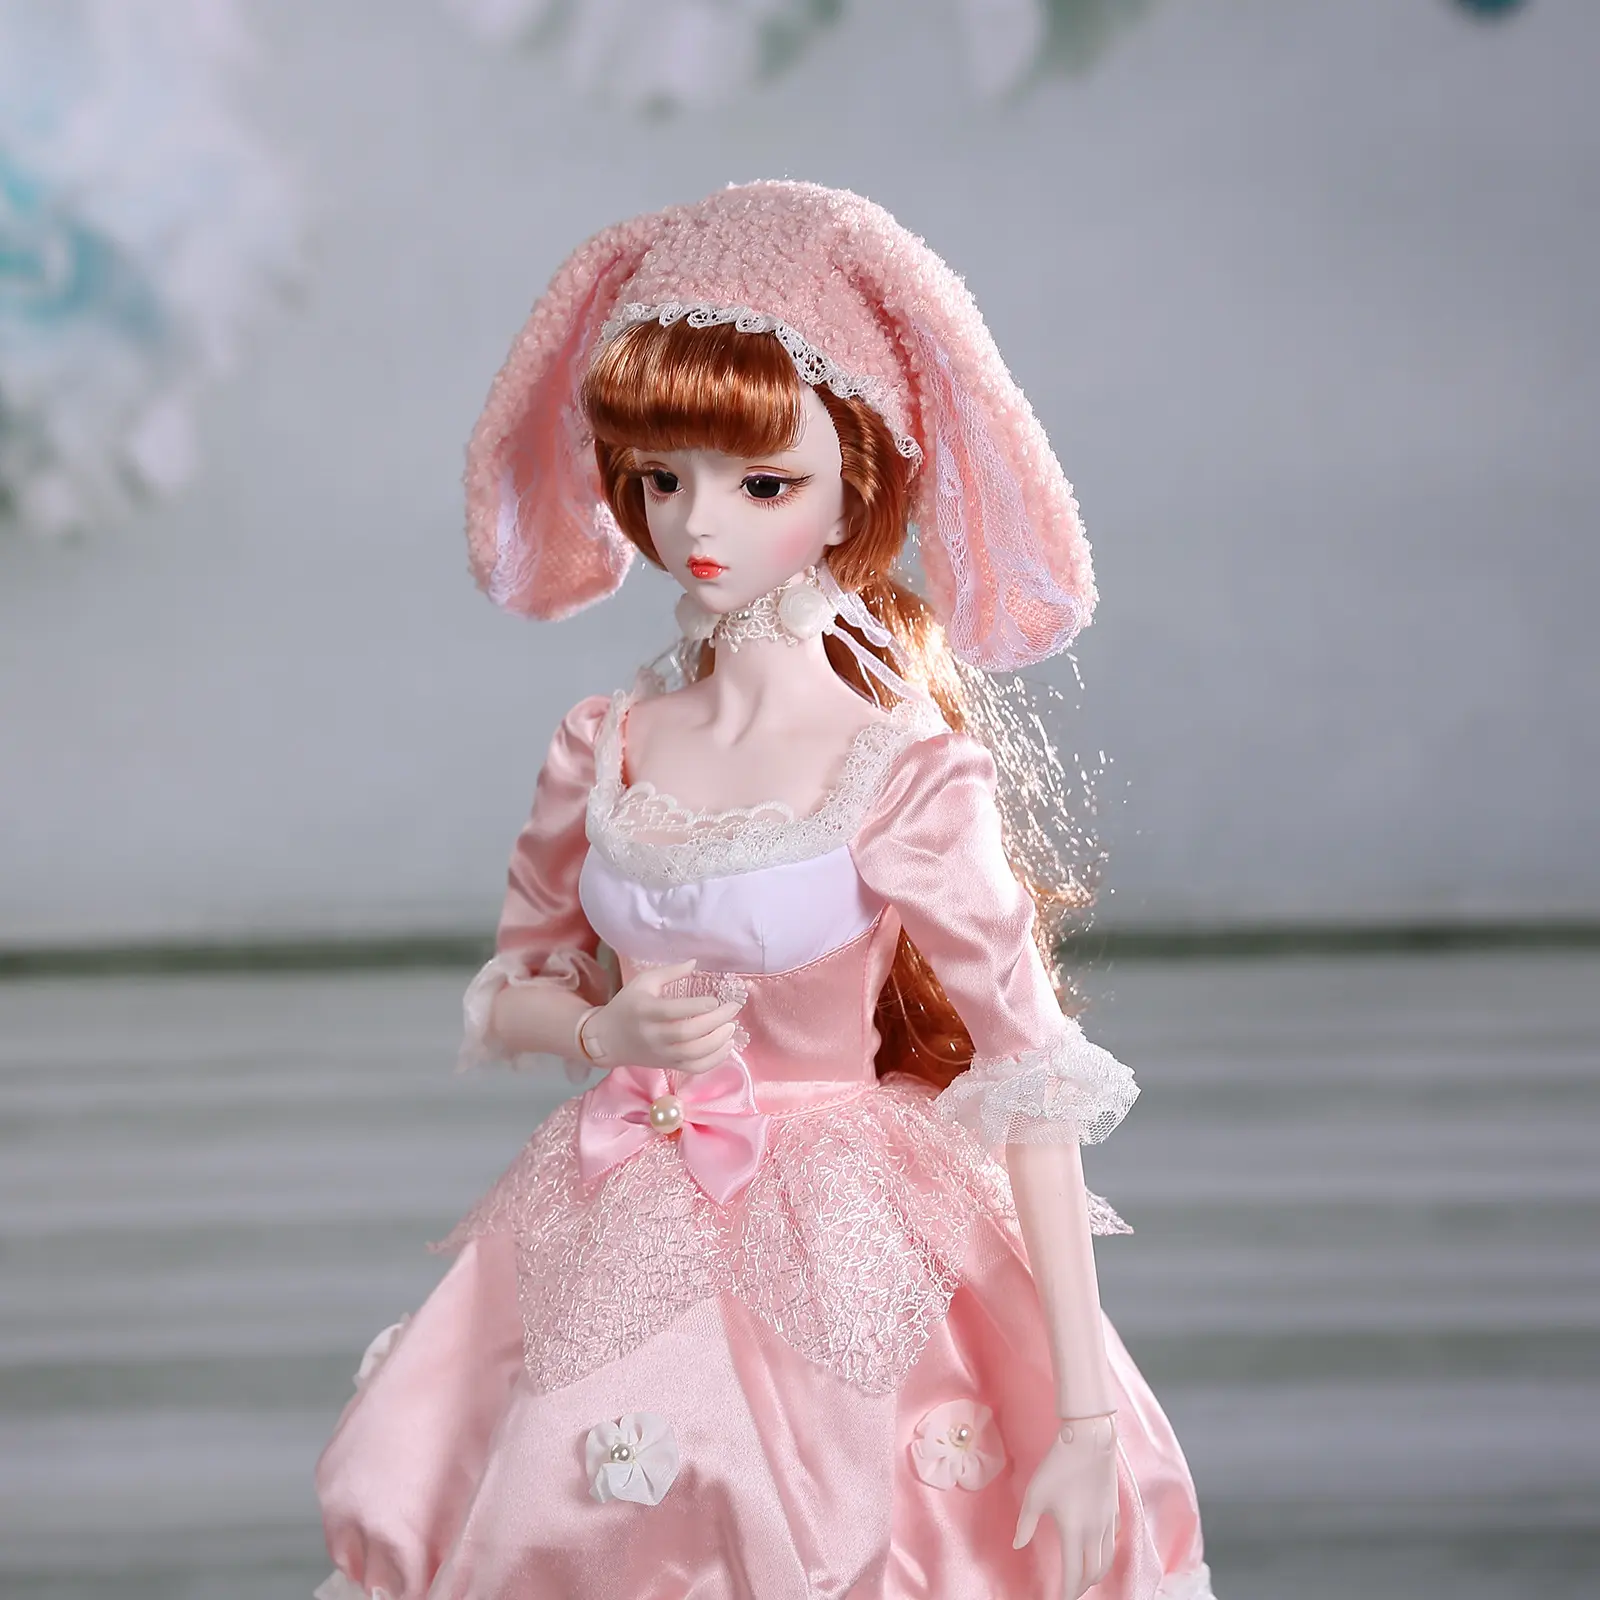 Кукла Фея мечты DBS 60 см, кукла принцессы 1/3 BJD с механическими суставами, волосами и глазами, одеждой для девочек, Кукла SD kpop, подарок на заказ для девочки